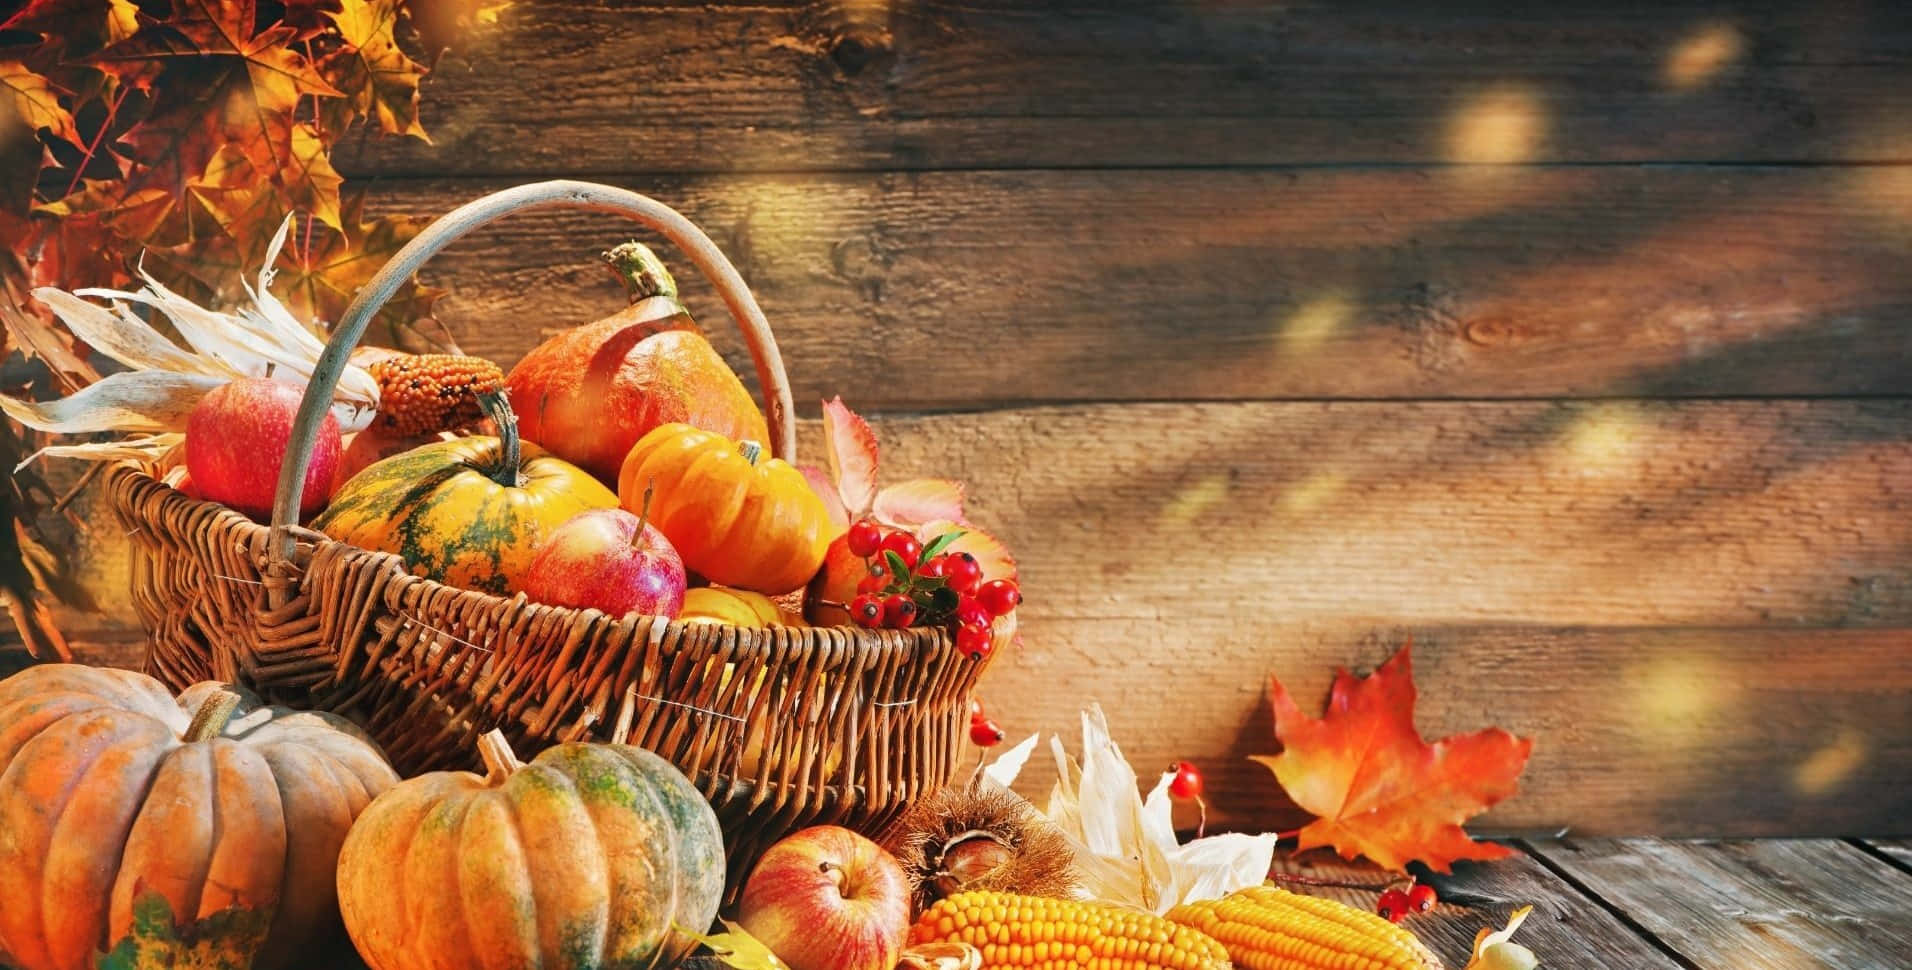 Högupplöstbakgrundsbild Med Pumpor I En Korg För Thanksgiving.